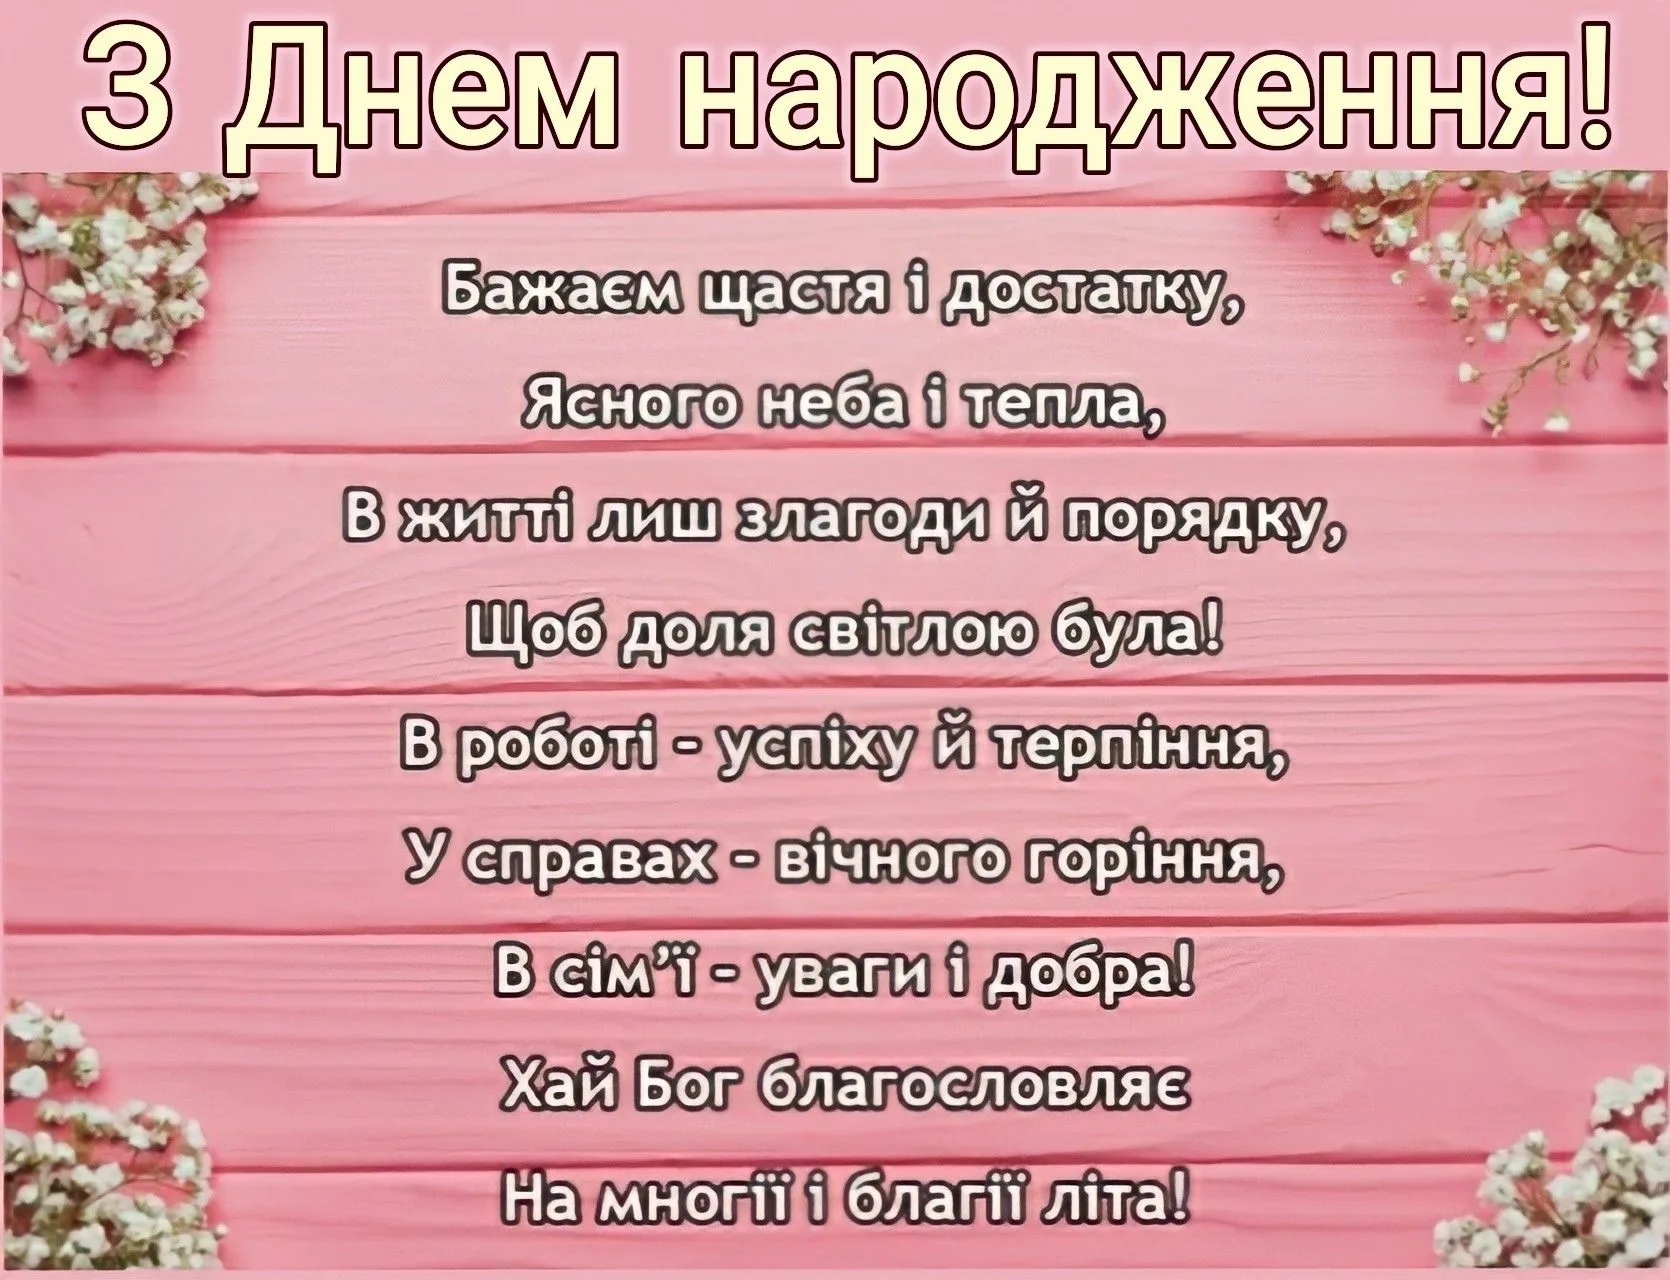 Фото Привітання з днем народження свекру на українській мові #28